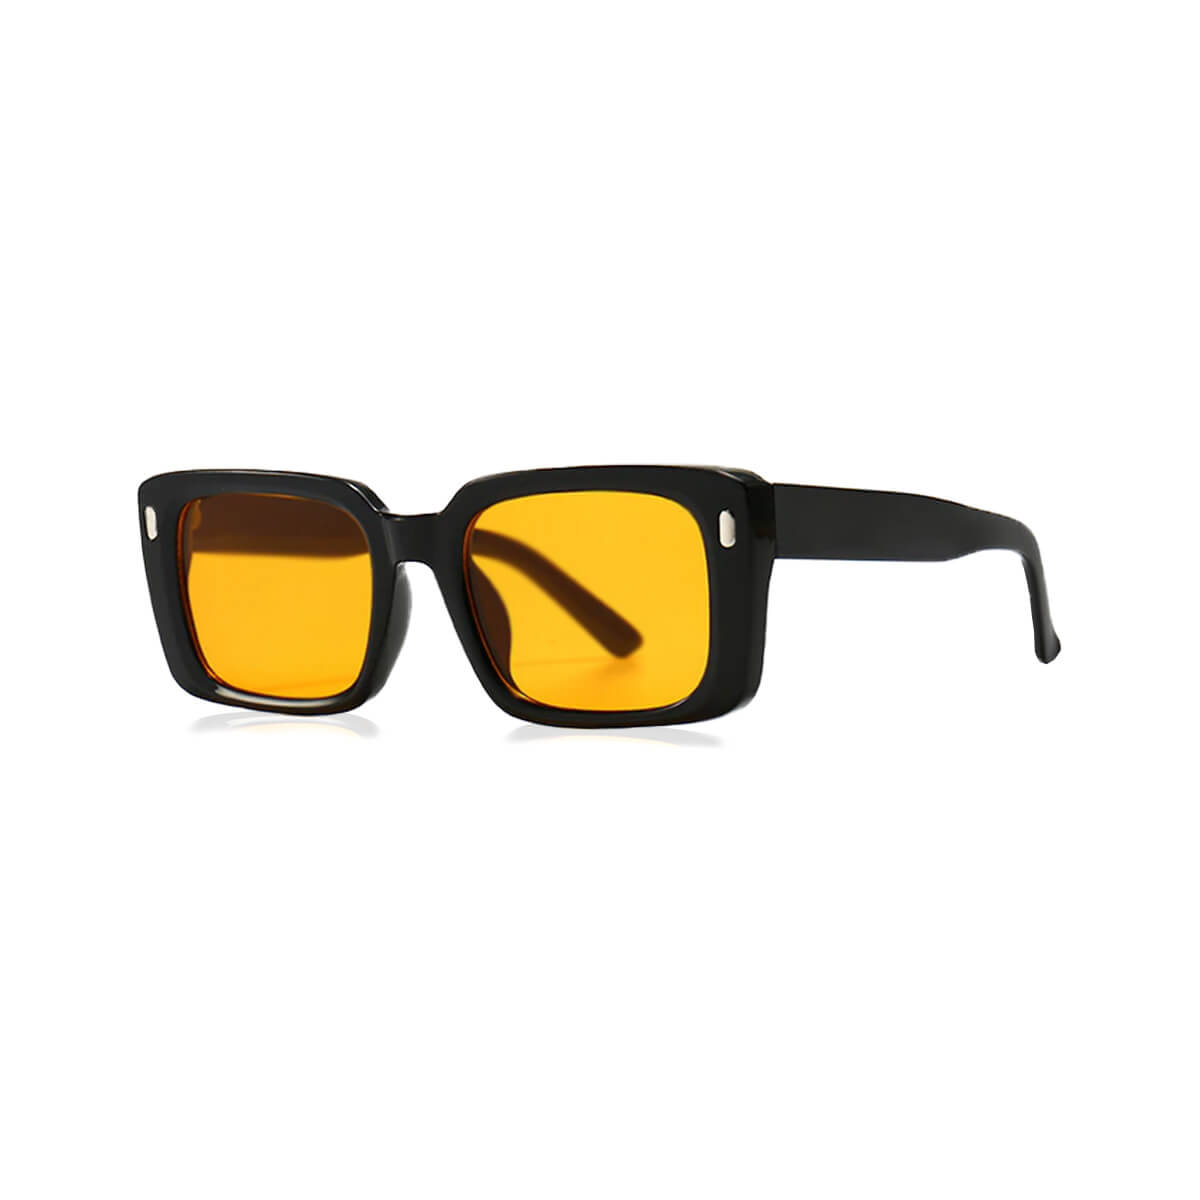 Black Frame Sunglasses With Orange Lens Front